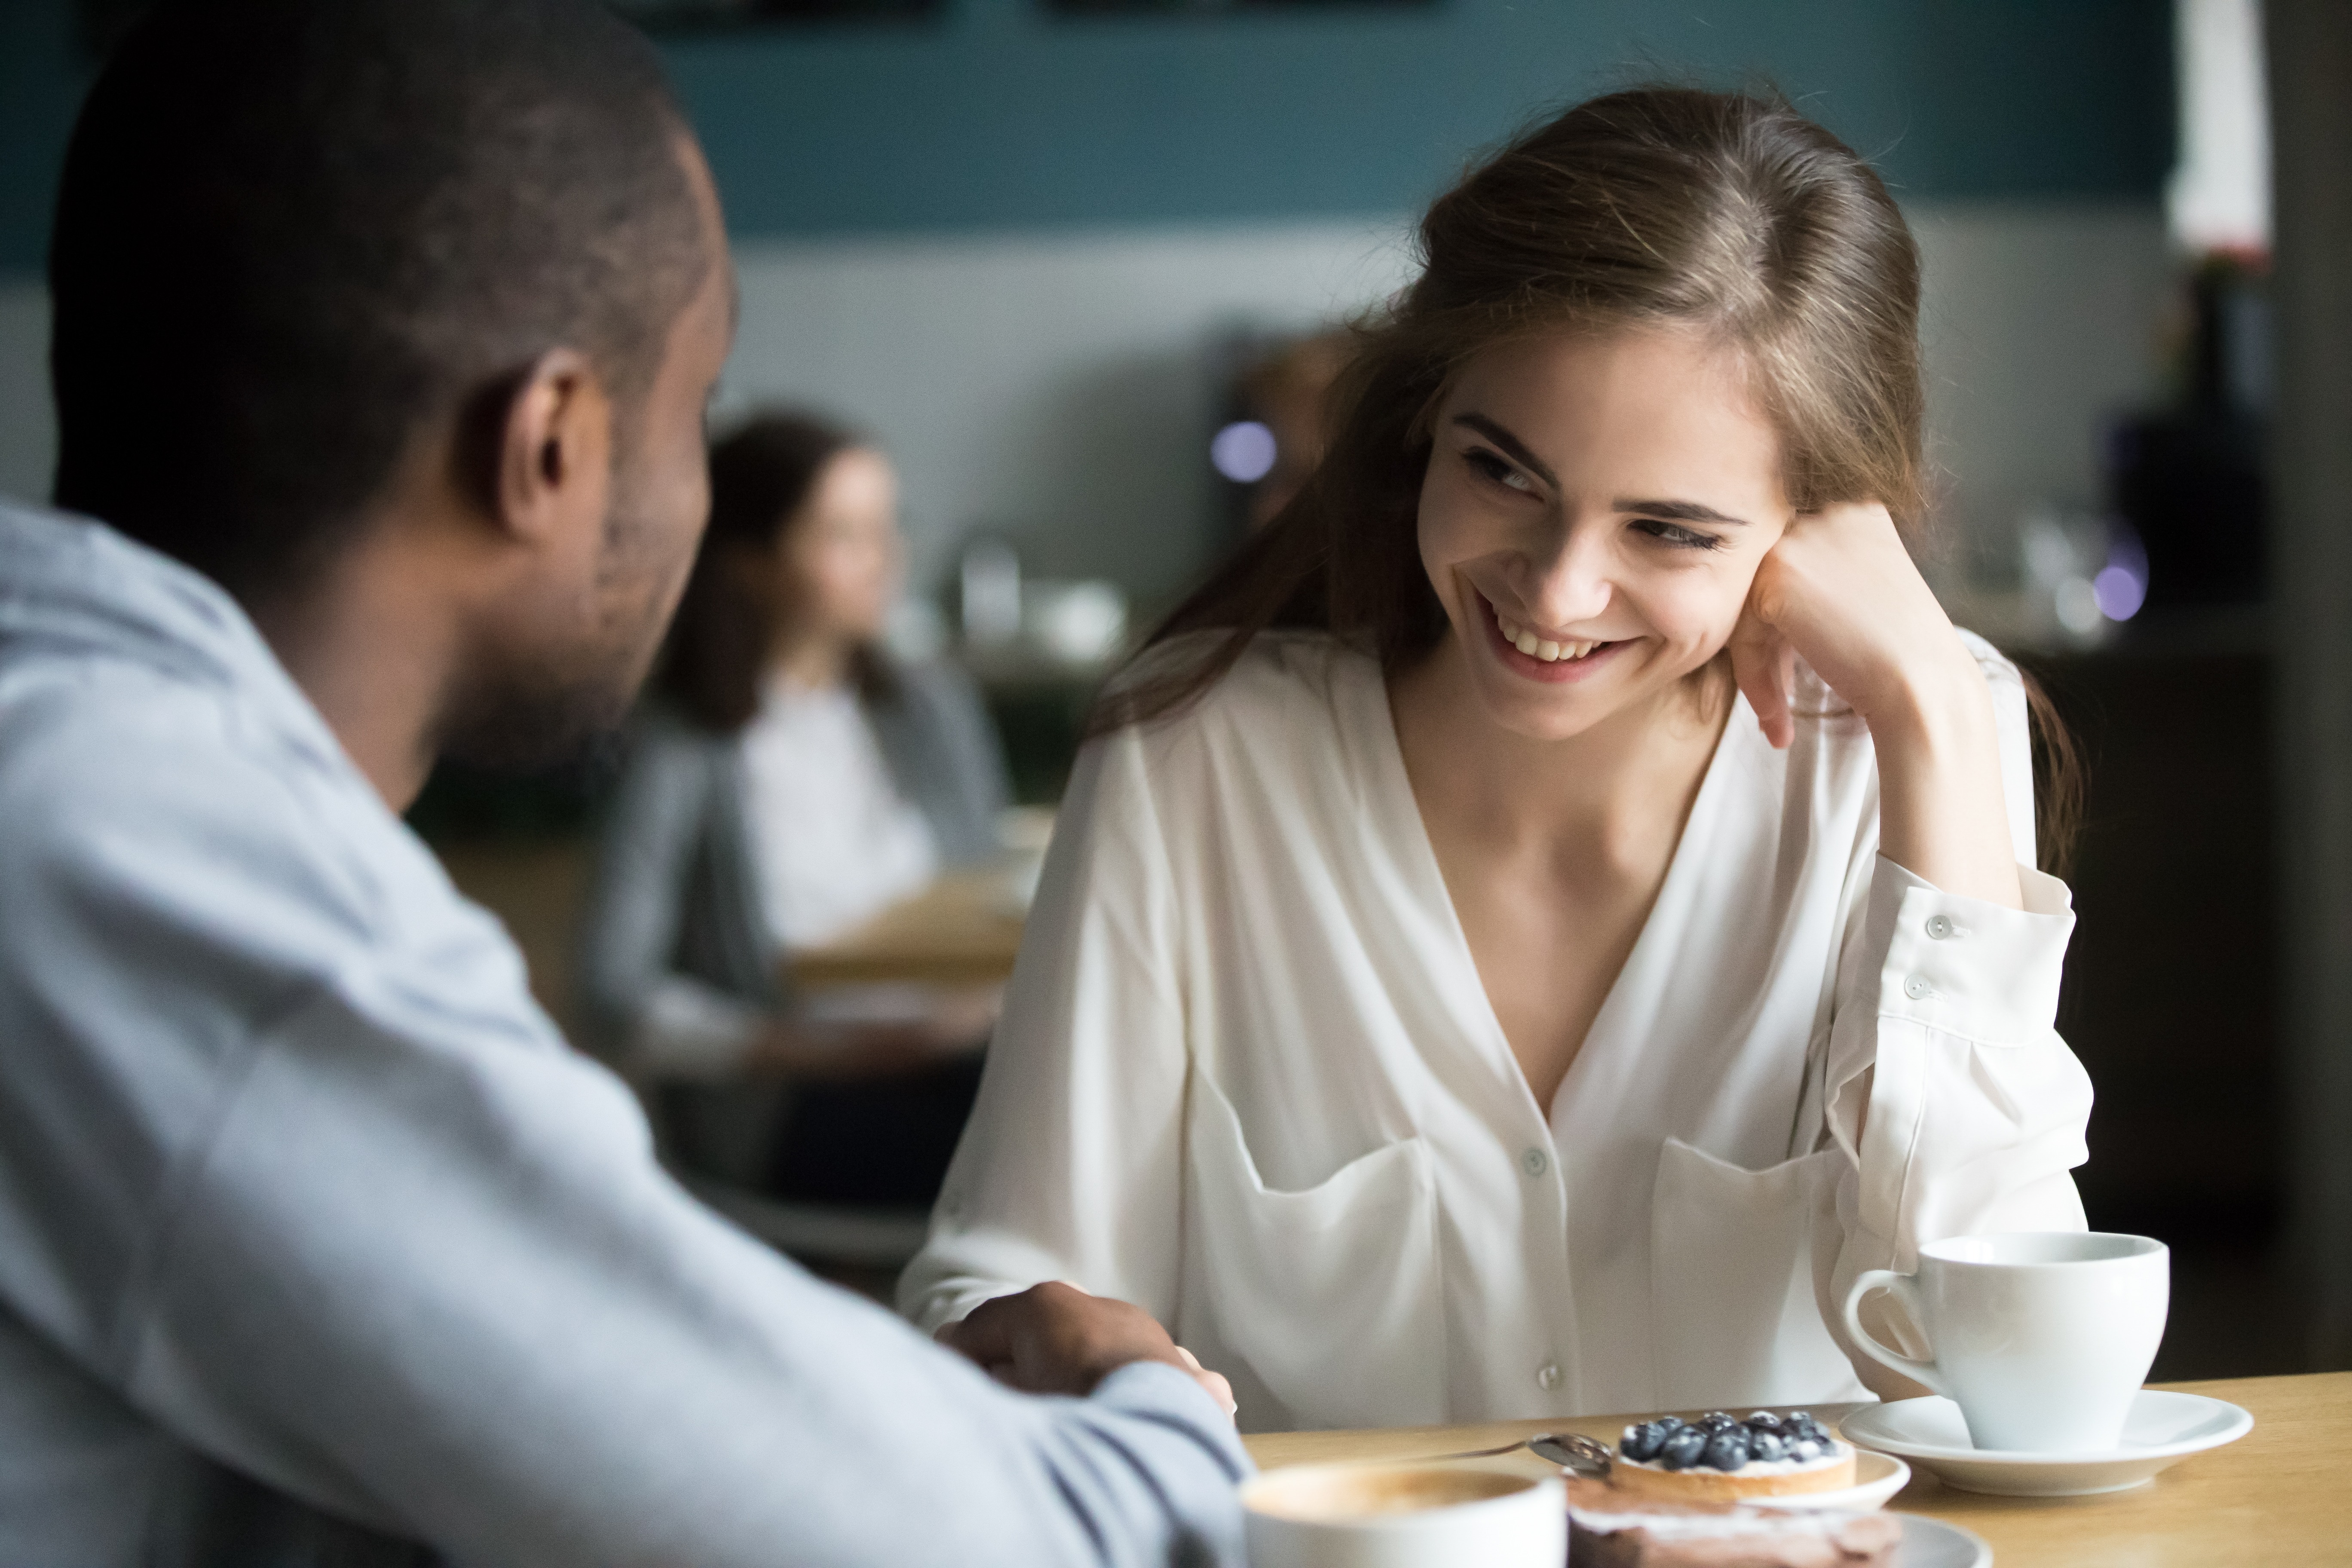 Ein glückliches Paar beim Flirten während eines Dates | Quelle: Shutterstock